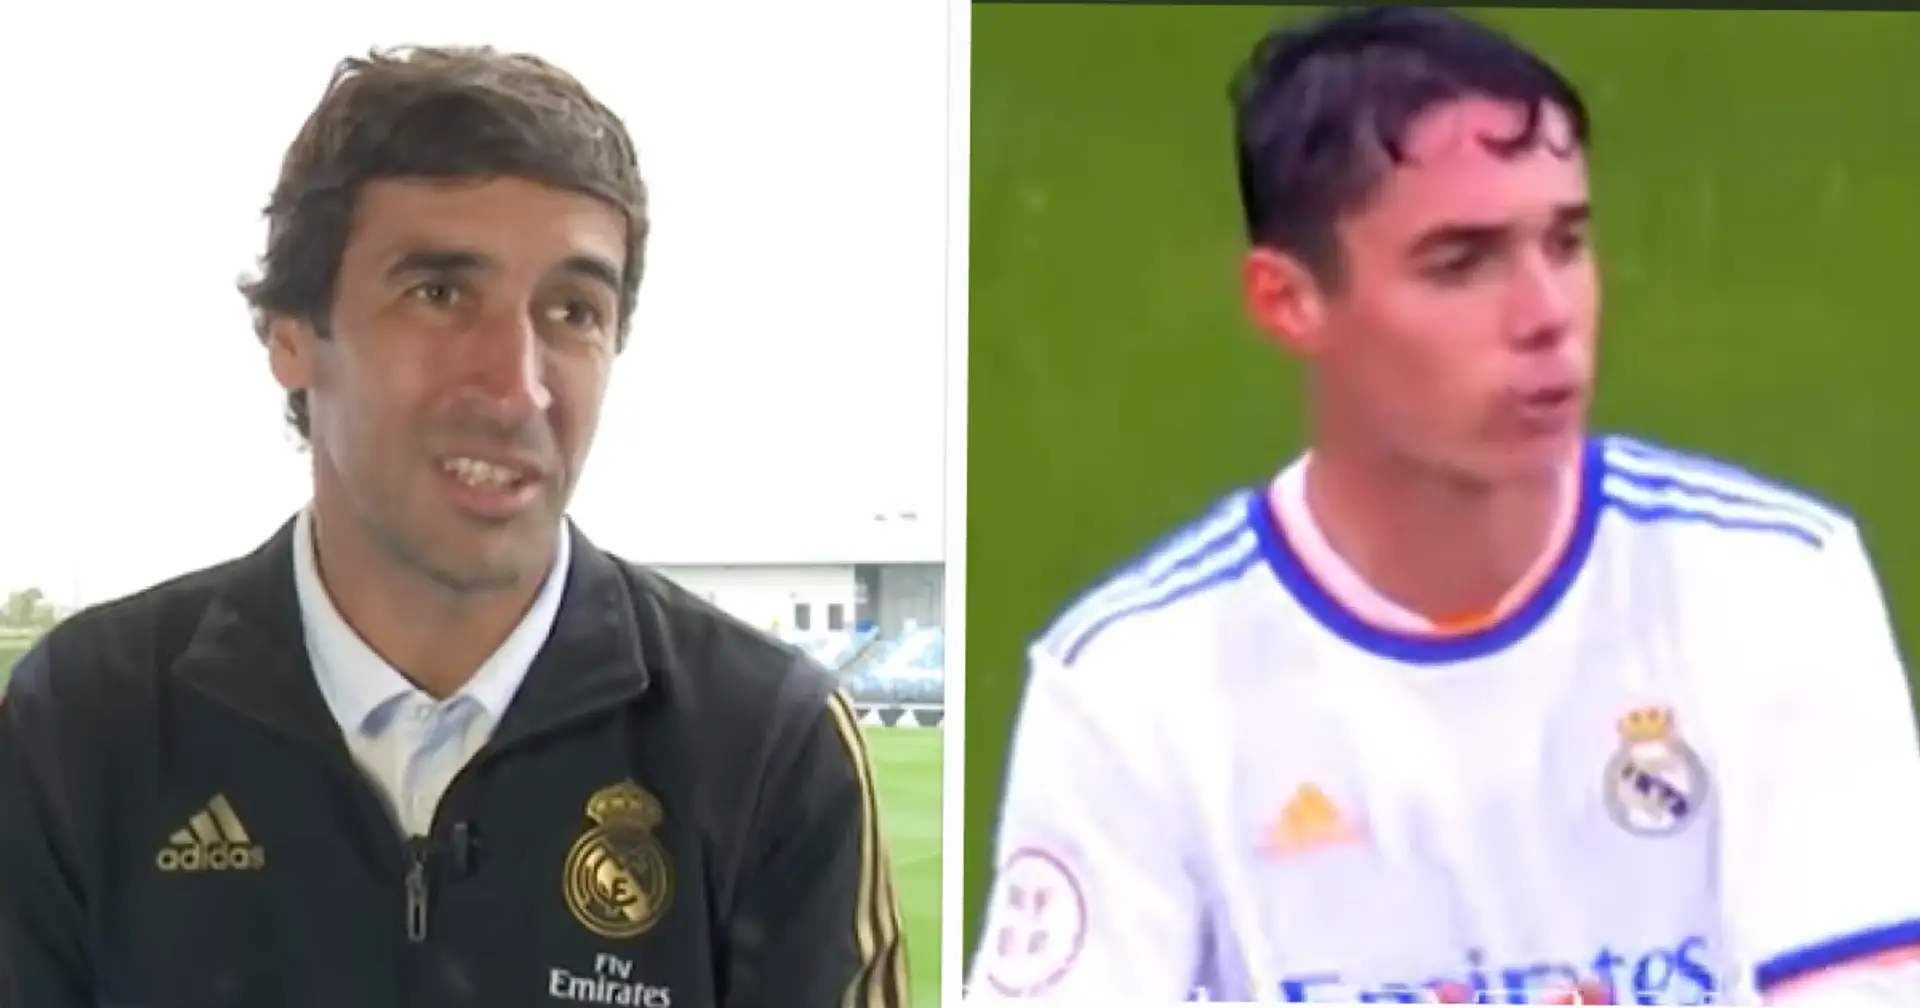 Raul nomme un jeune du Real Madrid qu'il espère faire bientôt partie de l'équipe sénior